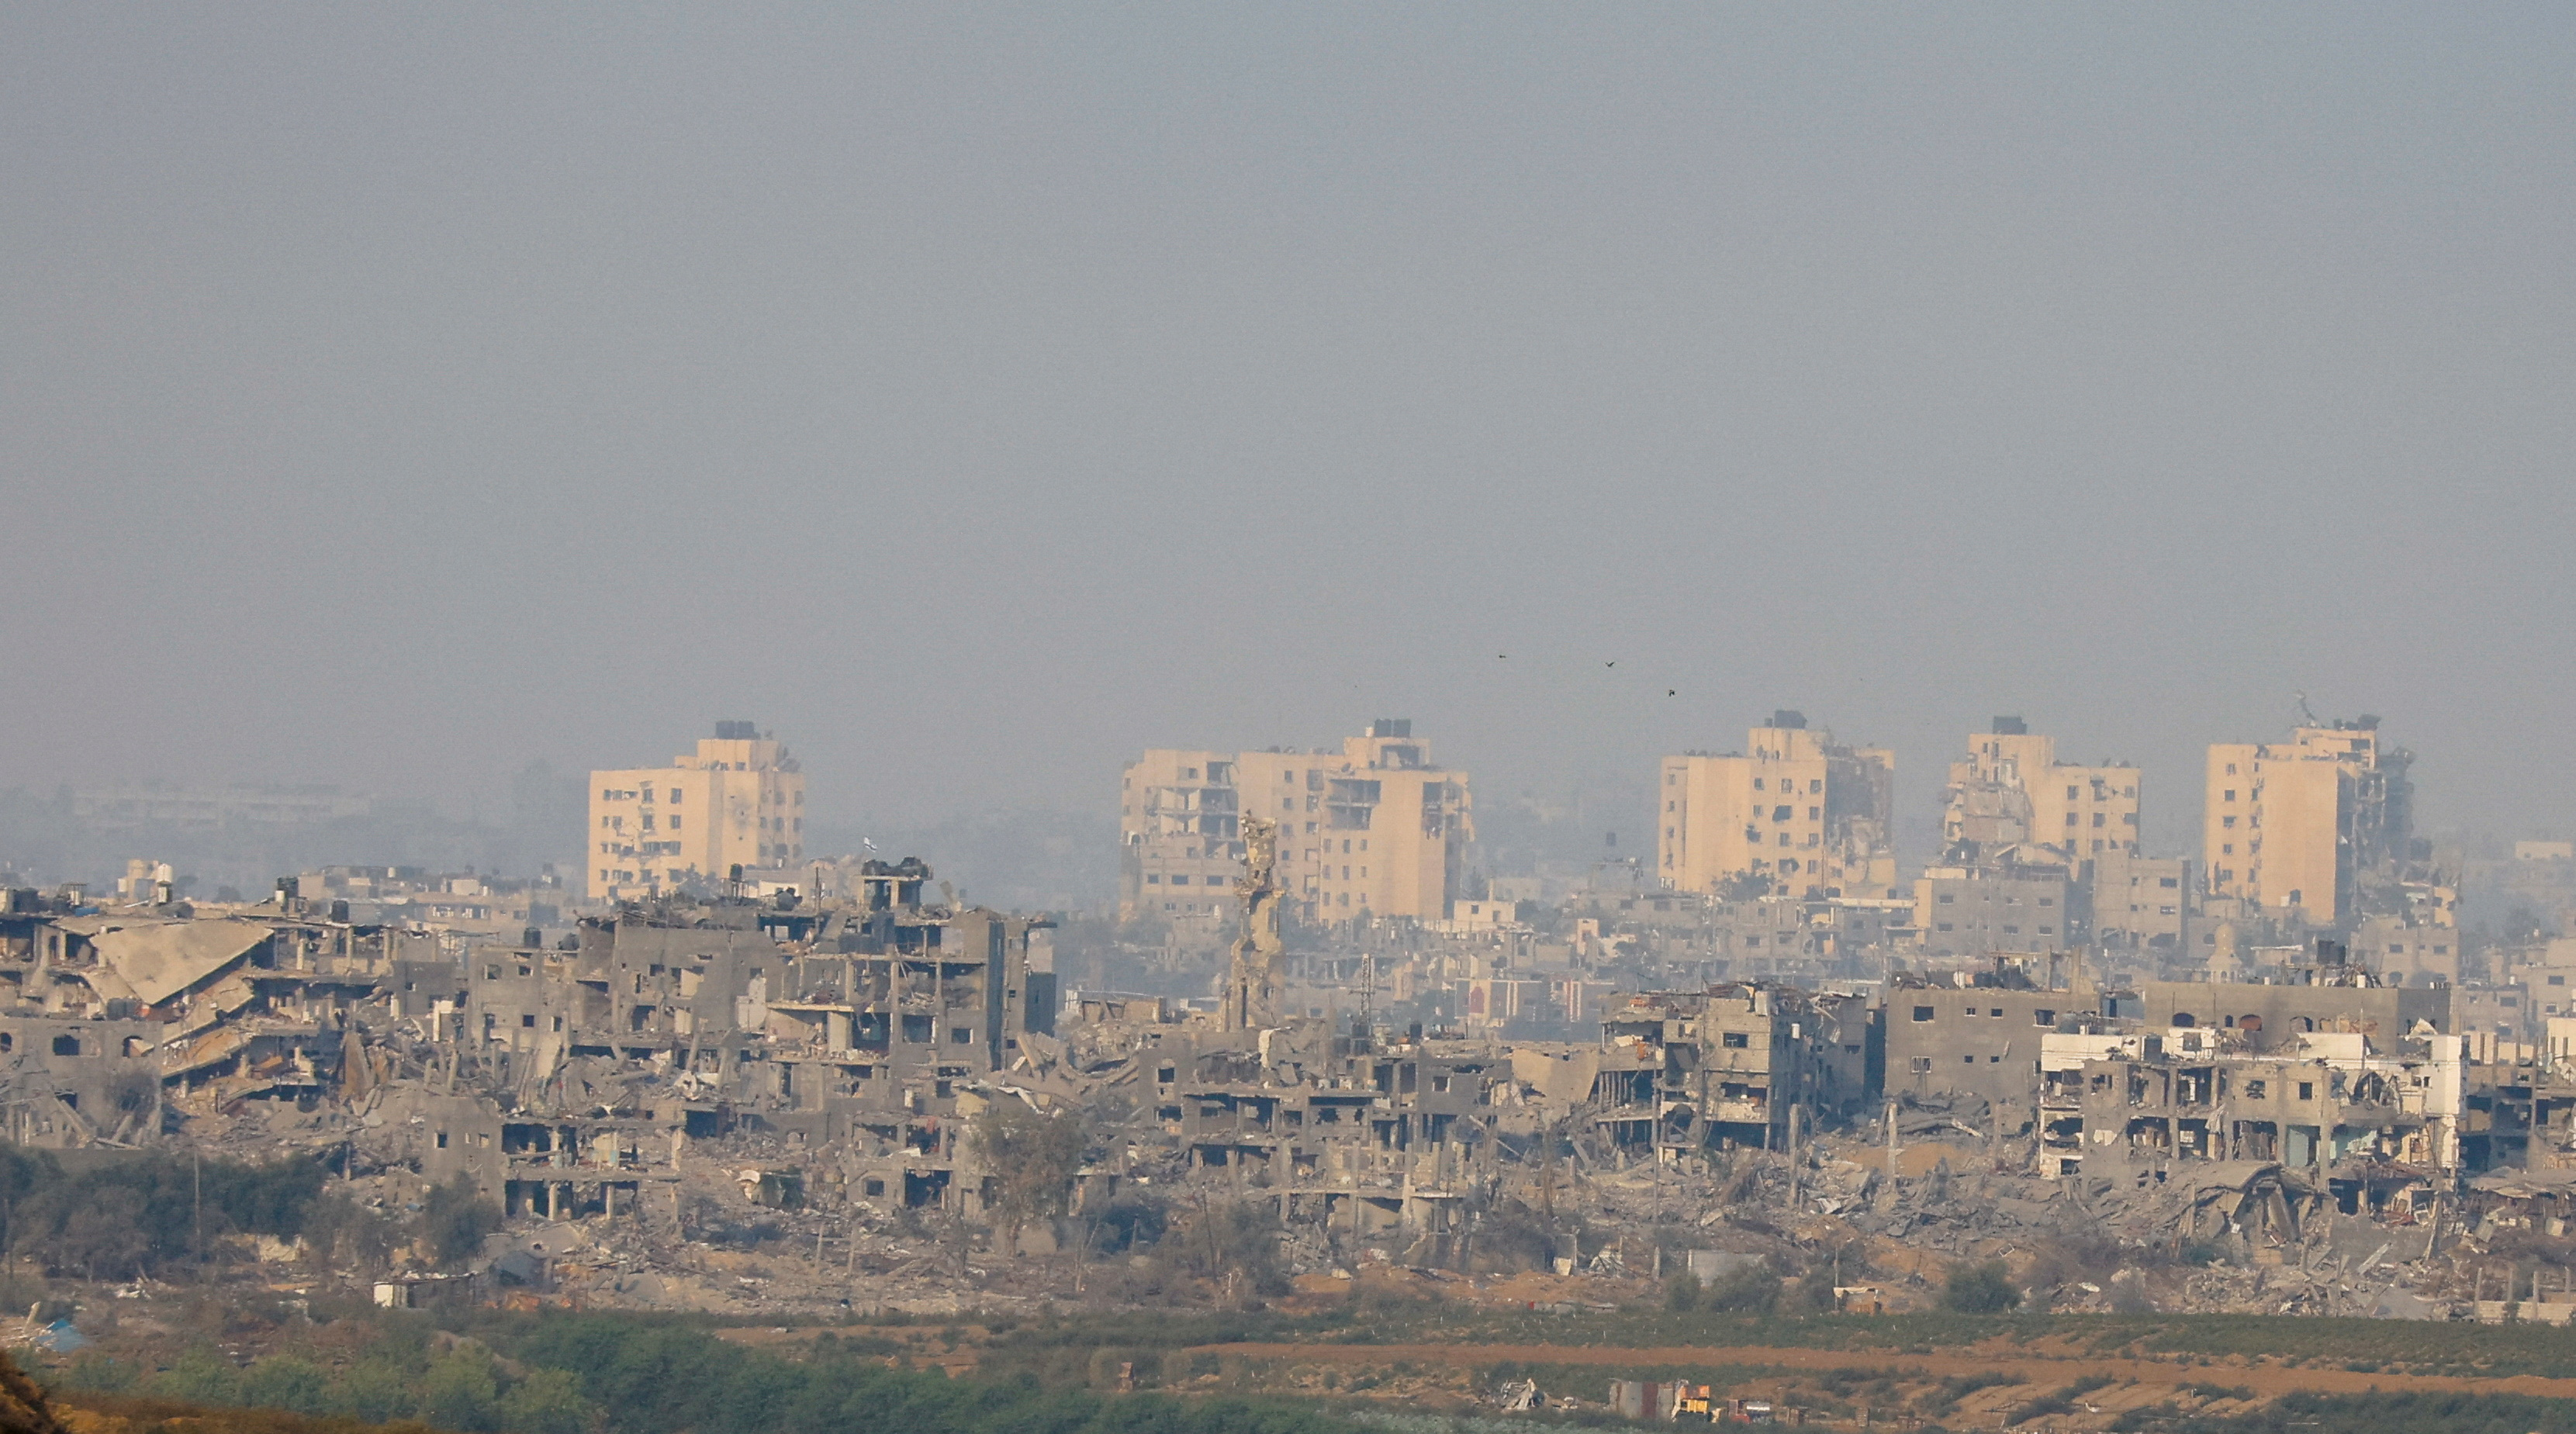 ガザとヨルダン川西岸で20人以上が死亡、イスラエル軍が攻撃 - ロイター (Reuters Japan)